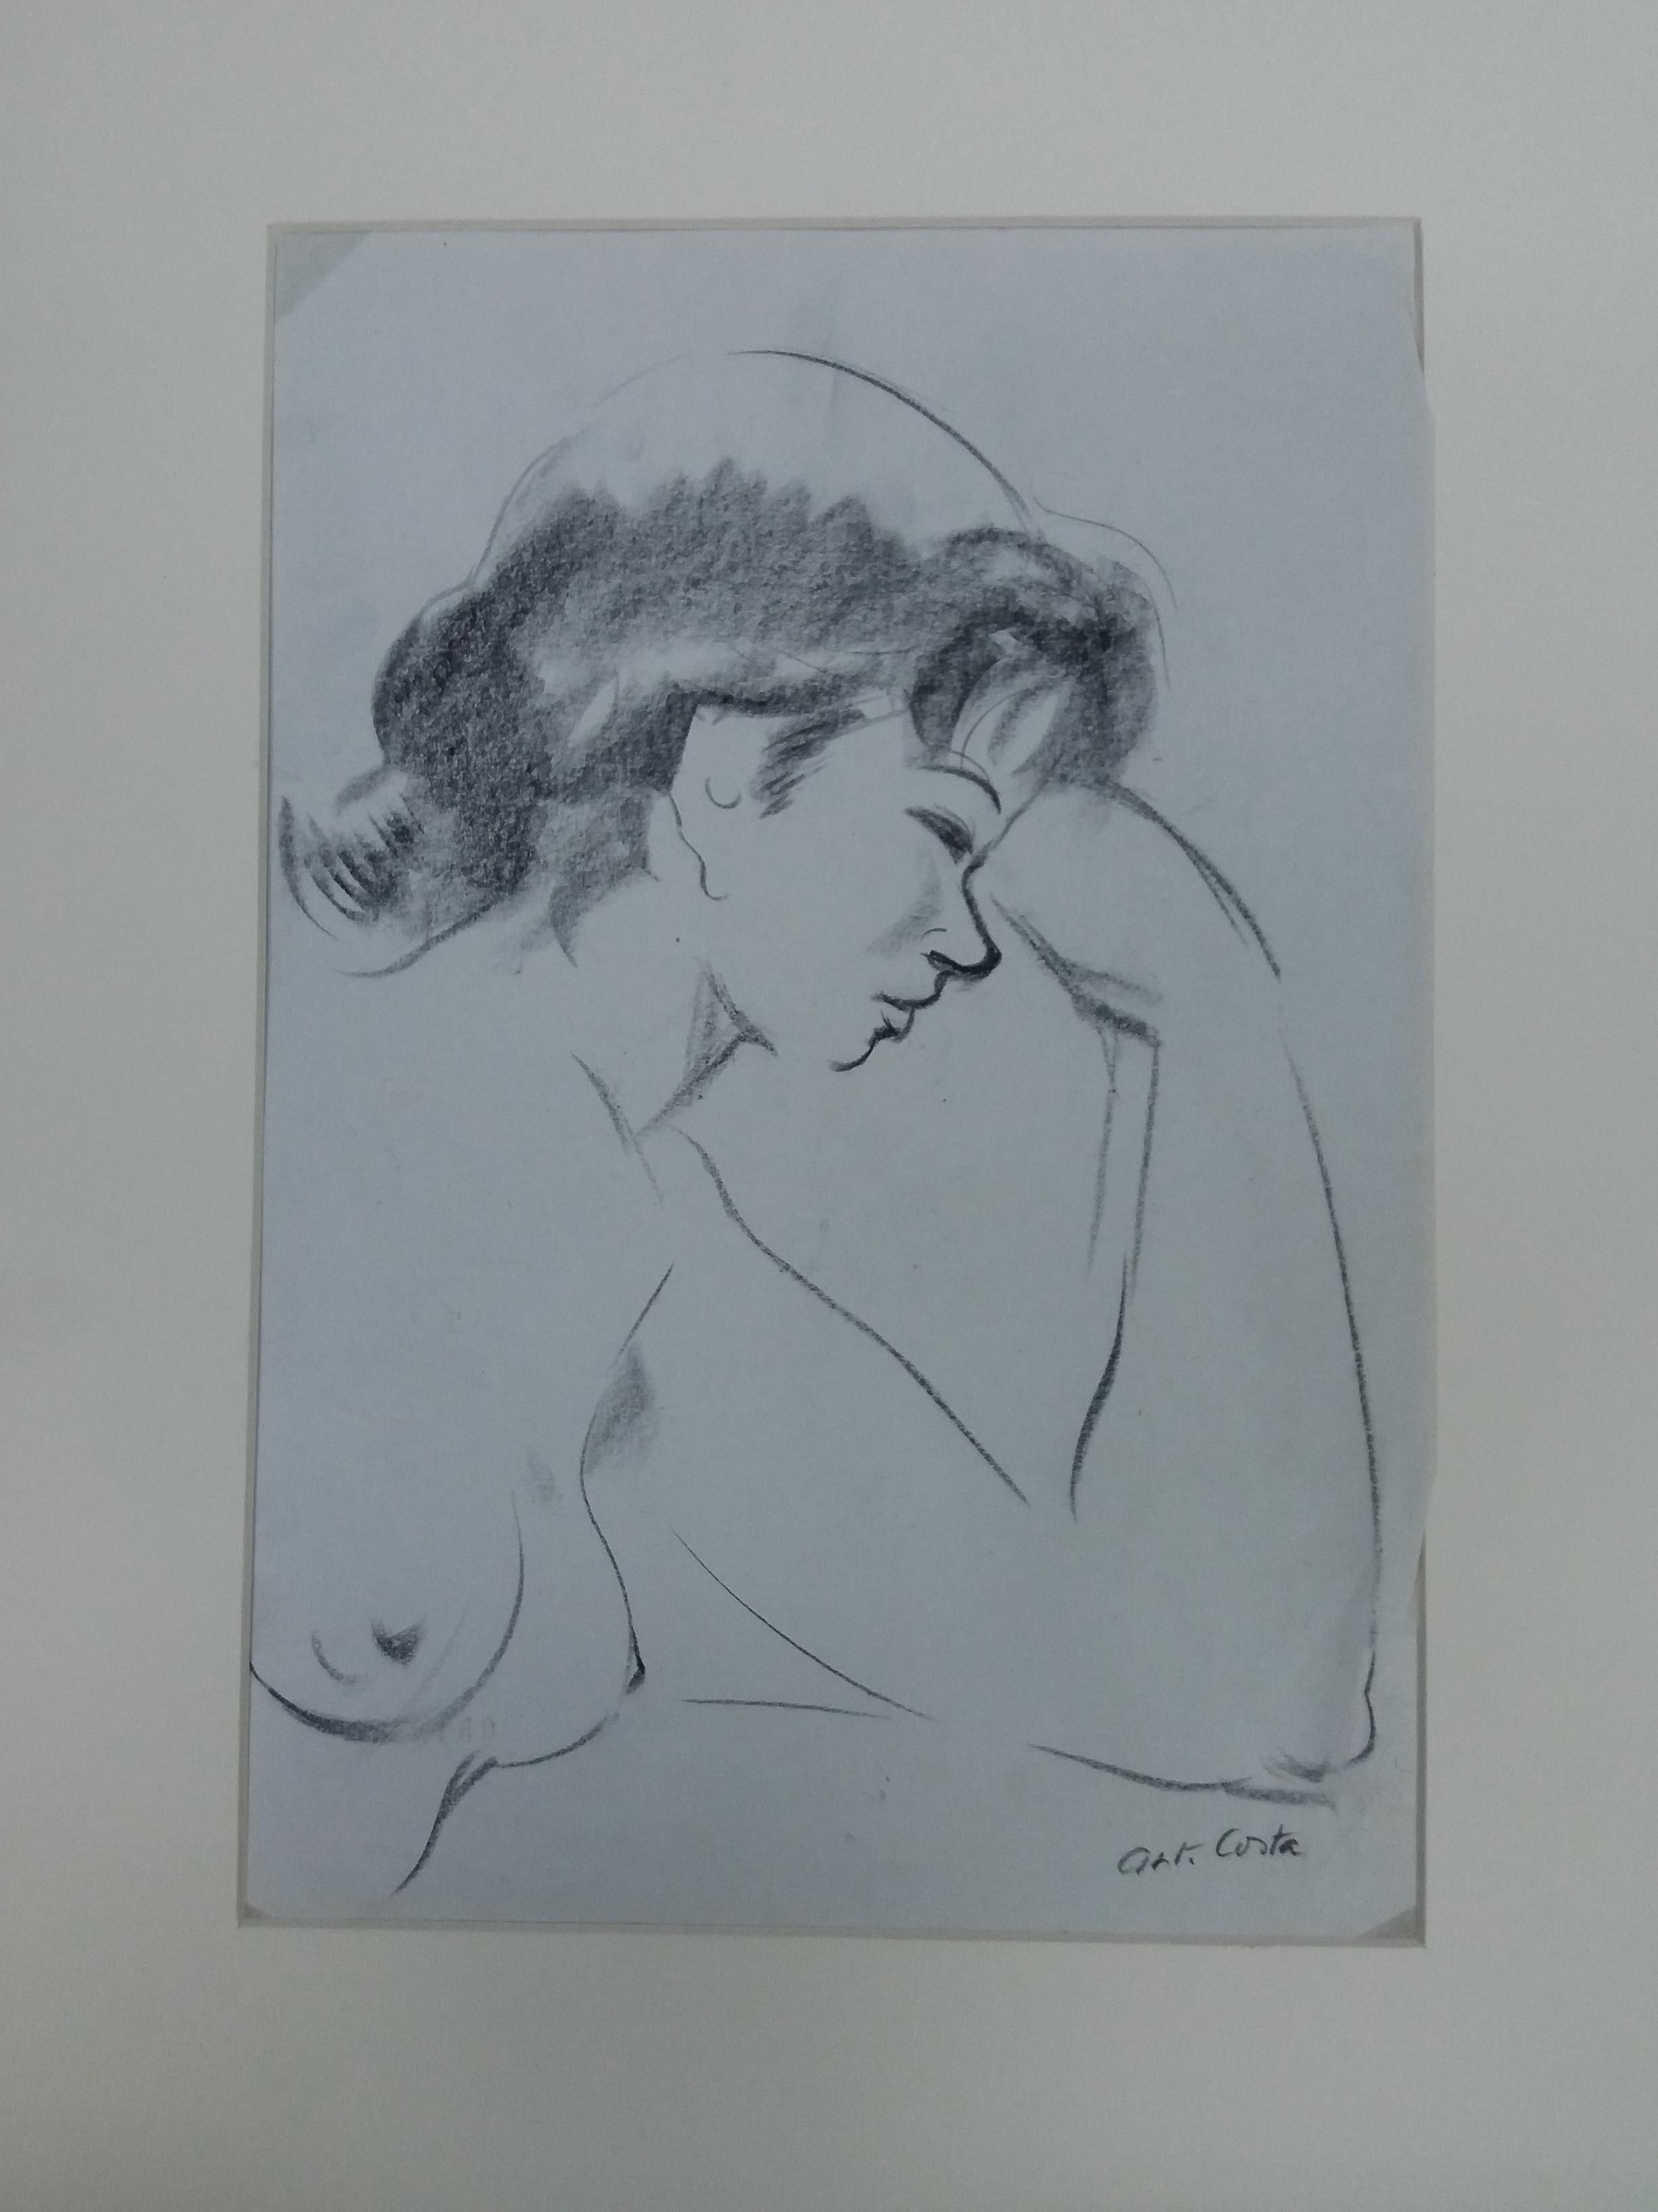  Antoni Costa, Femme figurative originale, peinture de dessin académique - Painting de A. Costa